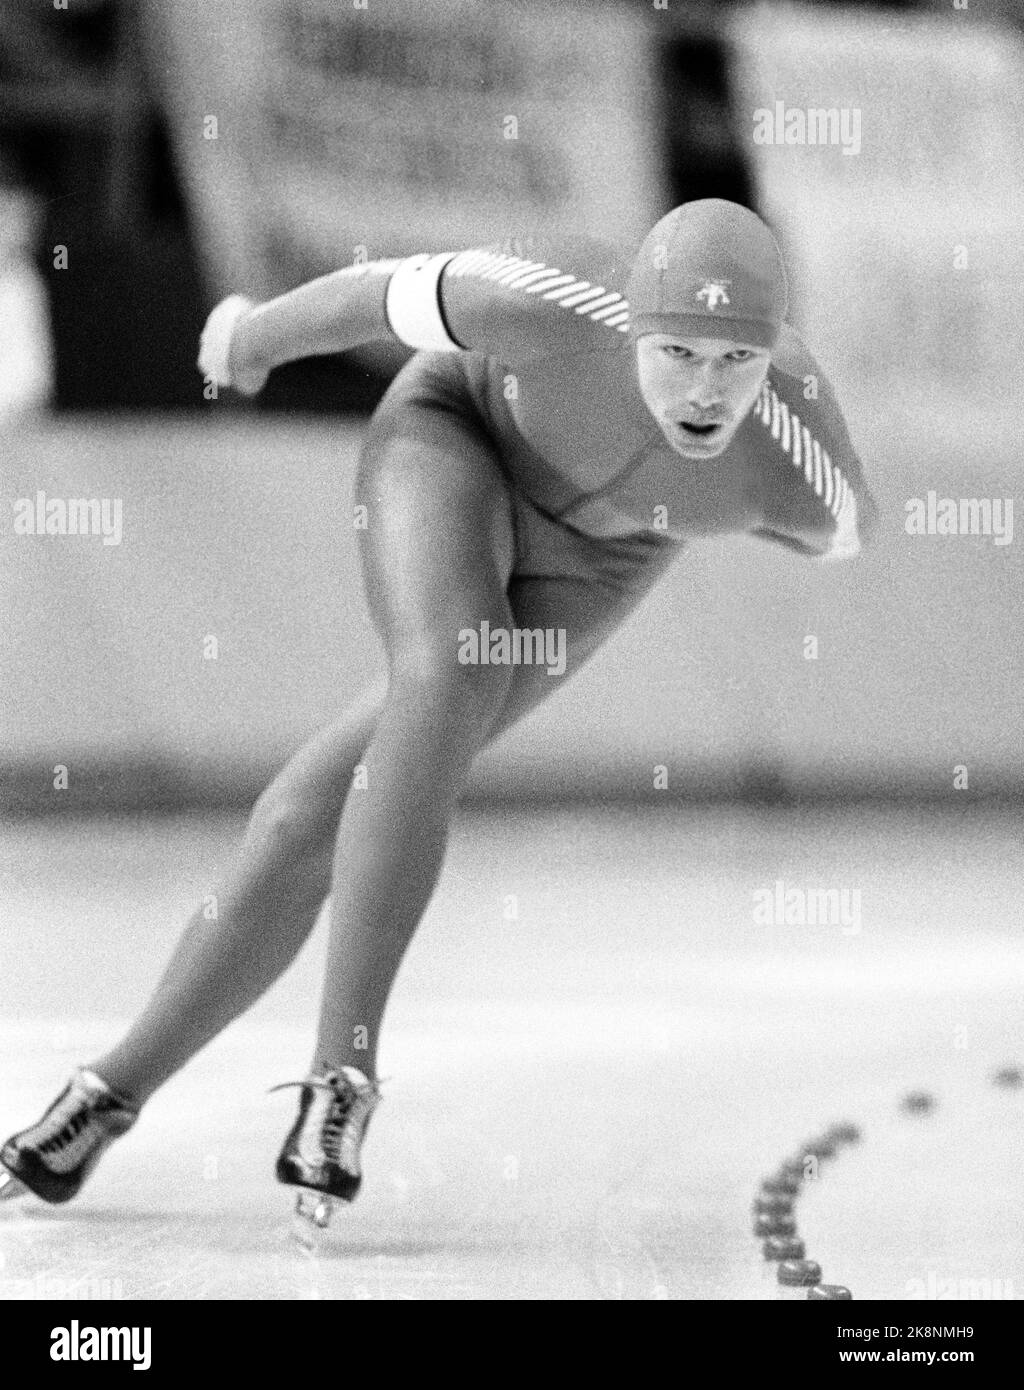 Calgary, Kanada 198802: Olympic Calgary 1988. Schlittschuhlaufen, 5000m. Geir Karlstad im Einsatz von 5000 m im Olympischen Oval am 17. Februar 1988. Der Weltrekordler Karlstad knackte nach der Führung der Distanz auf 3.000 Meter und landete auf Platz 7.. Foto: Henrik Laurvik / NTB Stockfoto